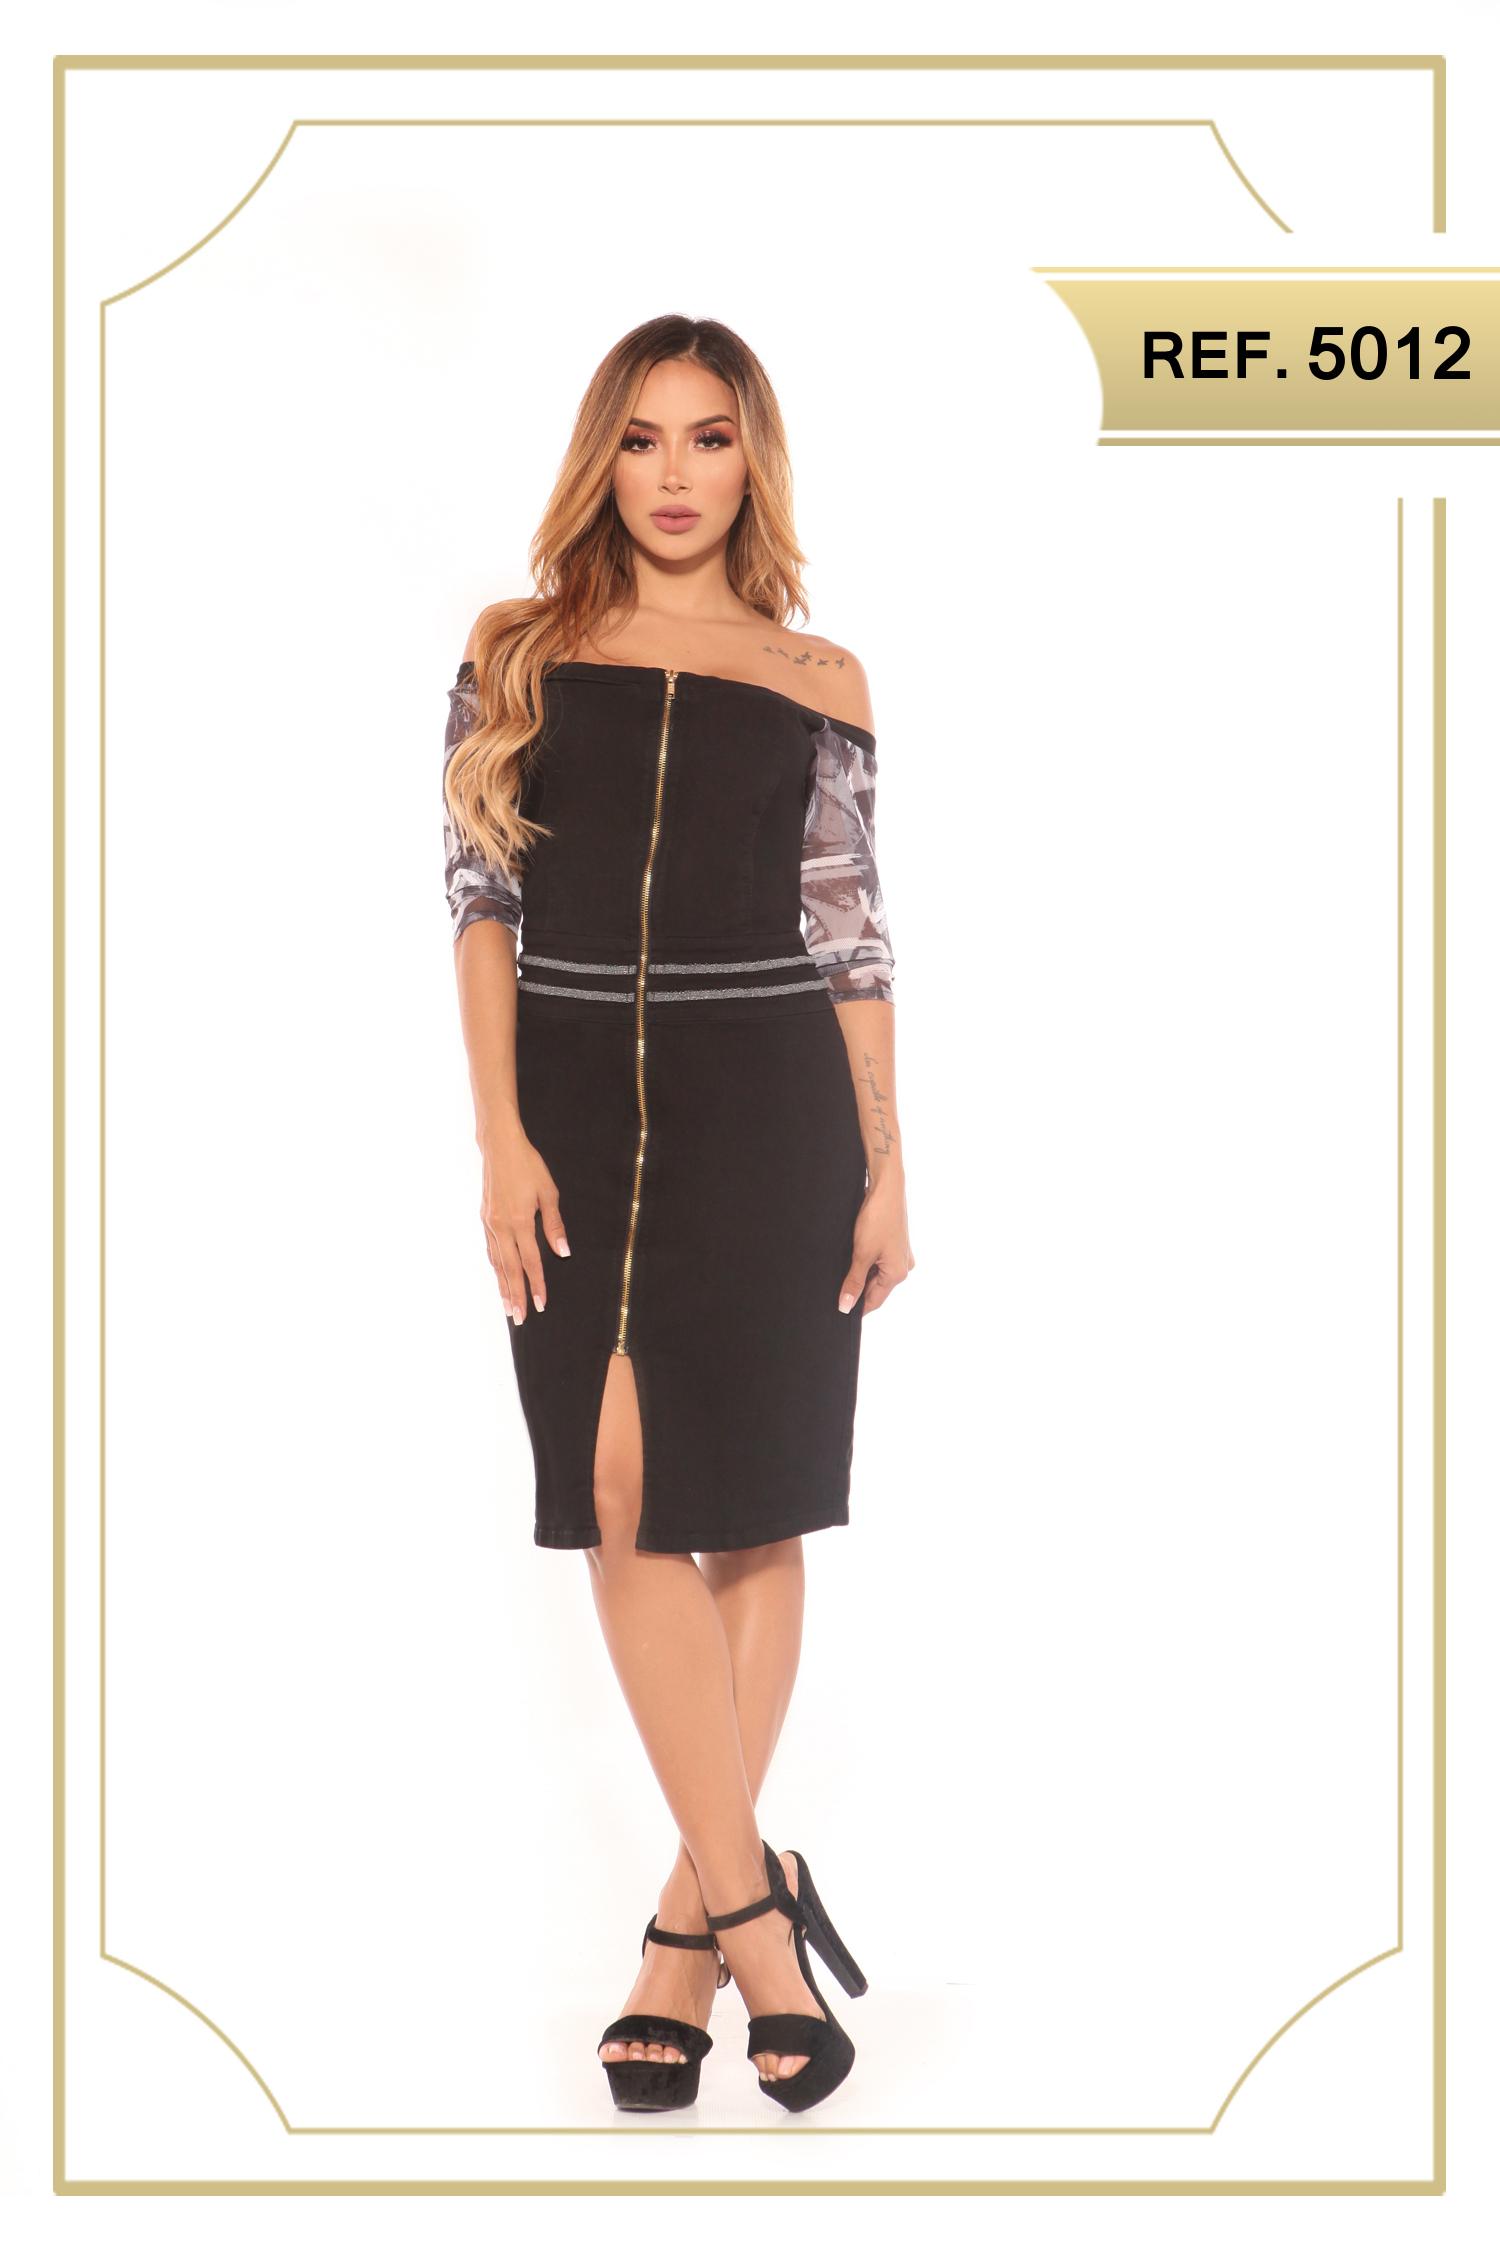 Comprar Vestido Colombiano de Jean color negro, con cremallera frontal, estilo falda de media pierna, con apertura decorativo en una pierna. Mangas hasta el antebrazo con decorado floral.